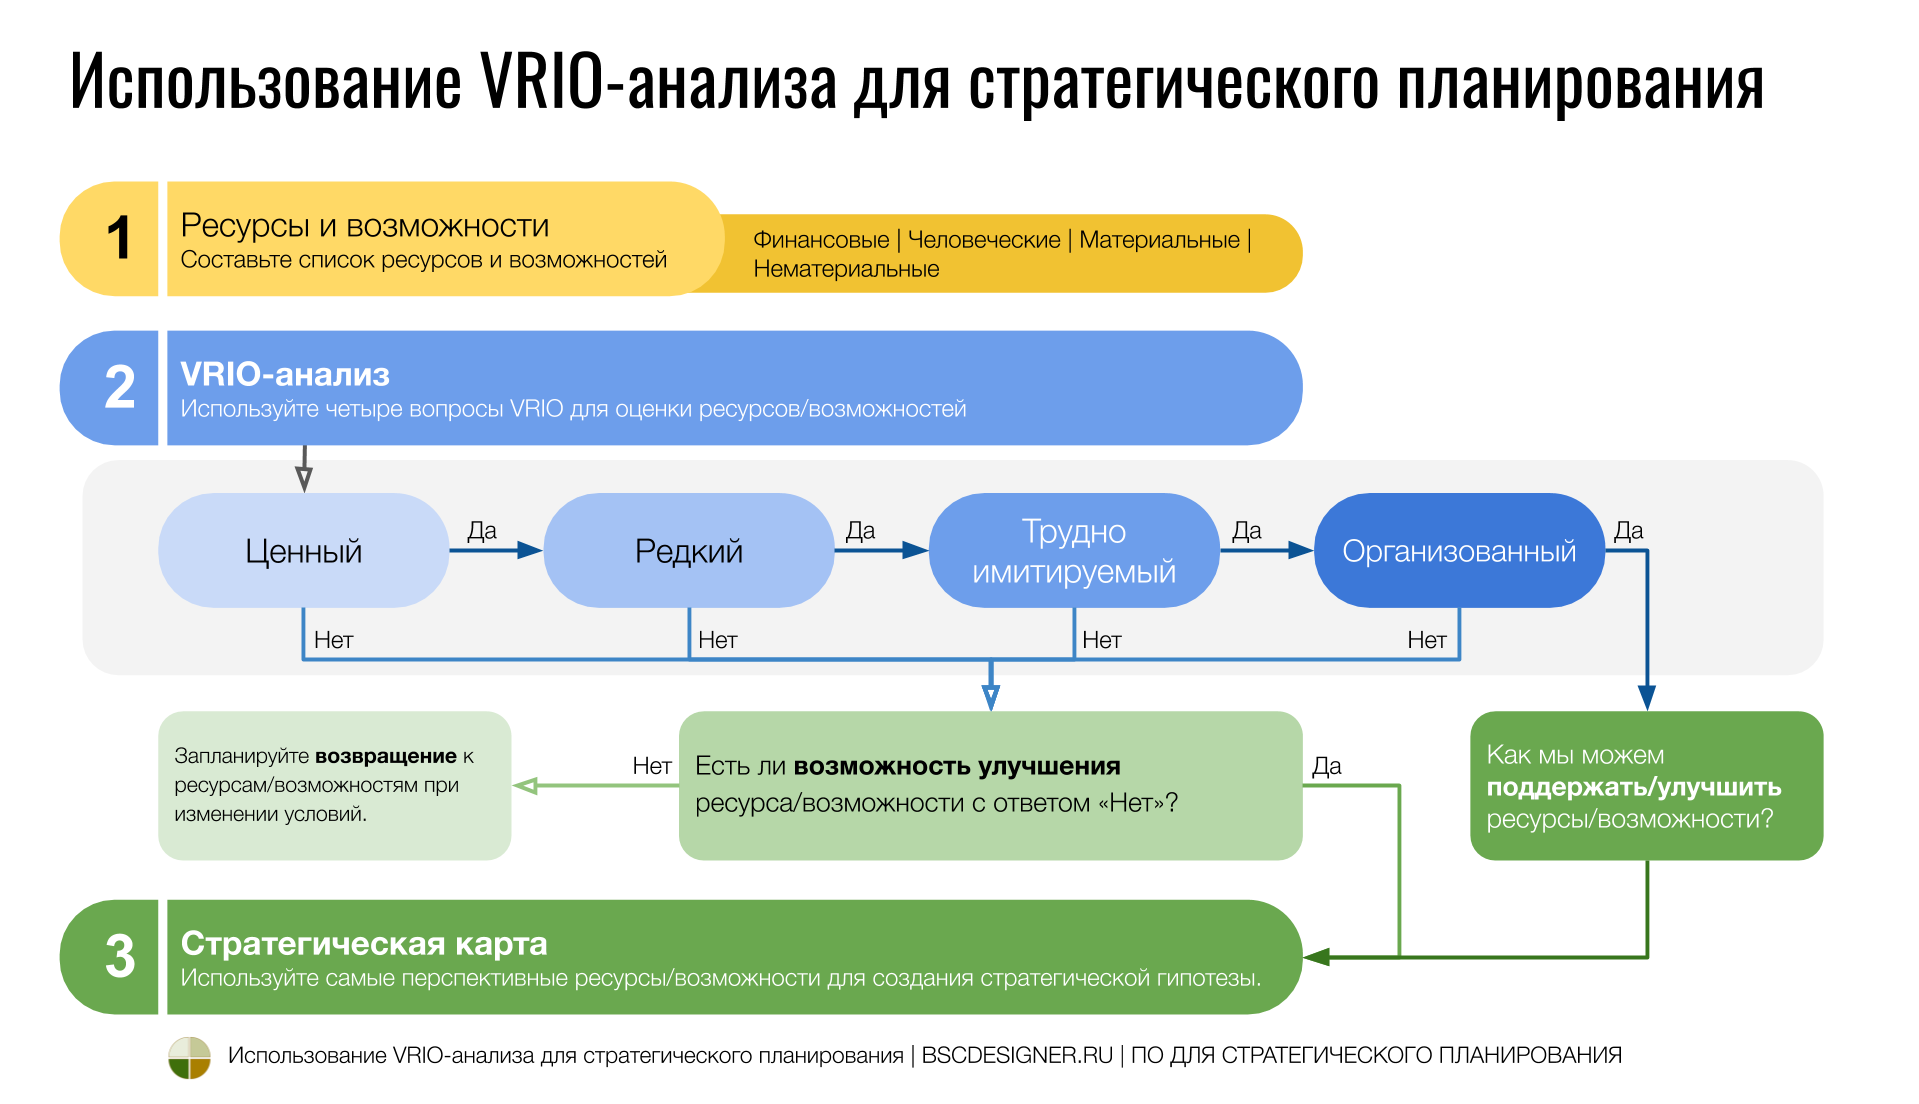 Использование VRIO-анализа в стратегическом планировании